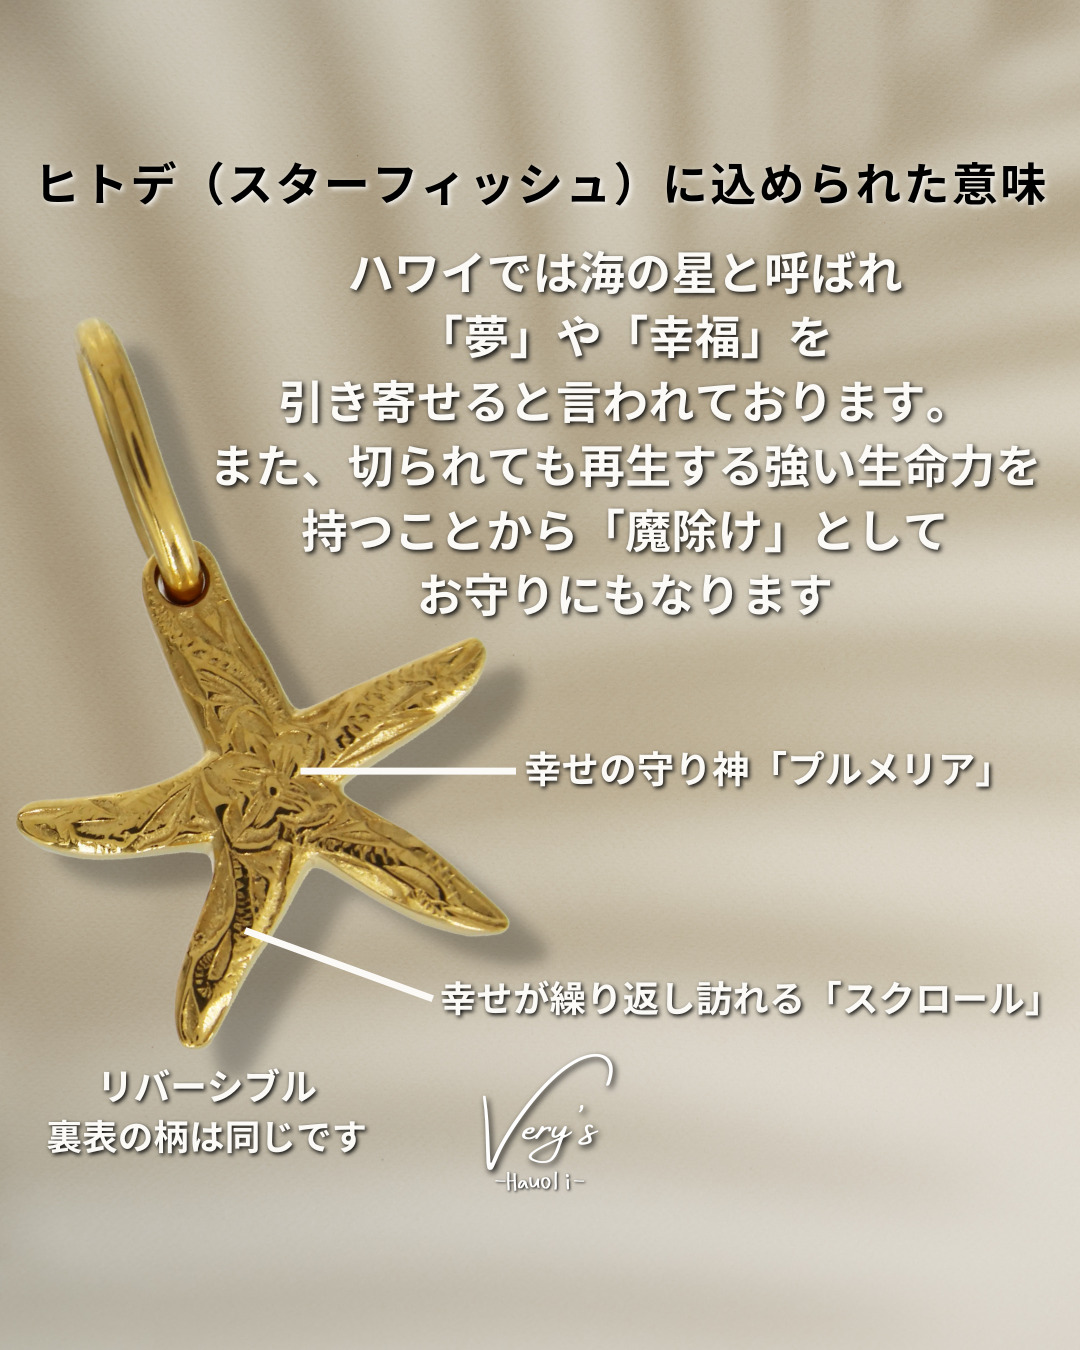 Starfish Top【Very's Hawaii】 | Very's Hauoli - 公式サイト